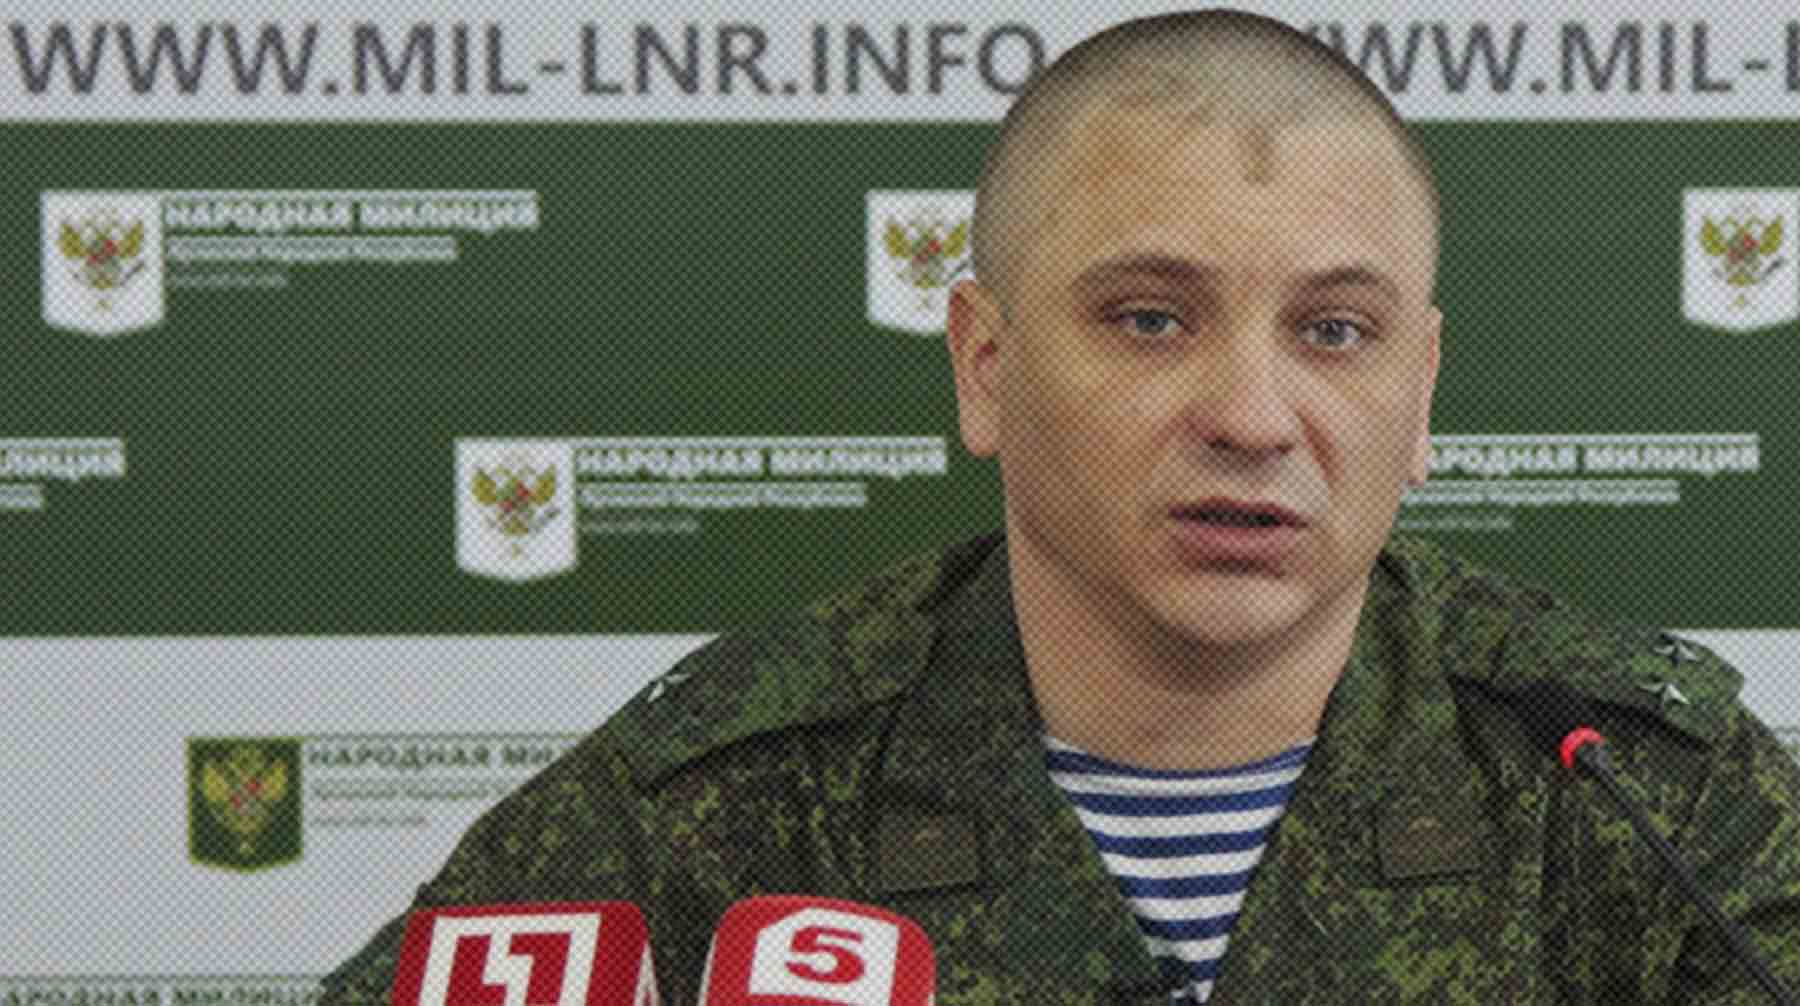 По словам Андрея Марочко, солдаты вывесили белую ткань на опорном пункте Андрей Марочко